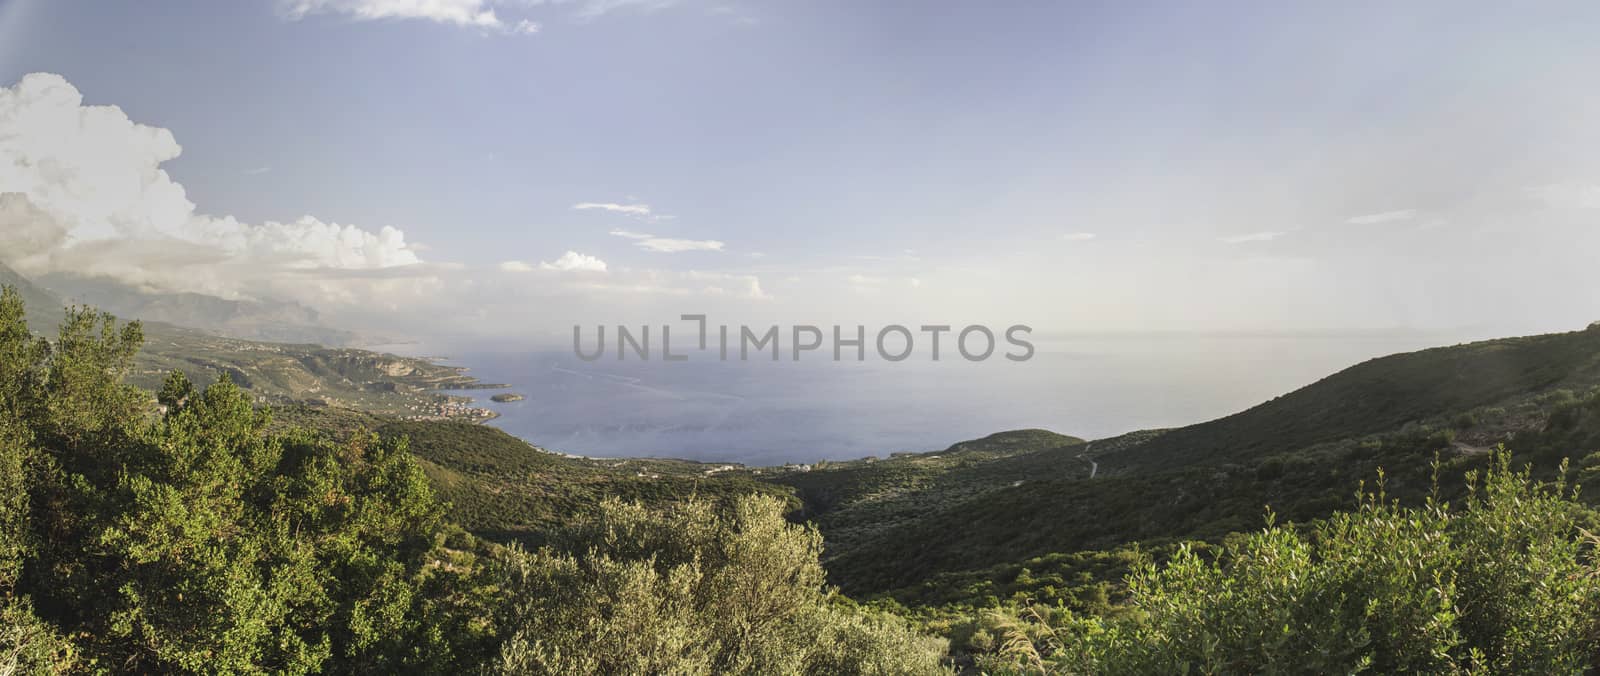 Landscape from Greece by deyan_georgiev